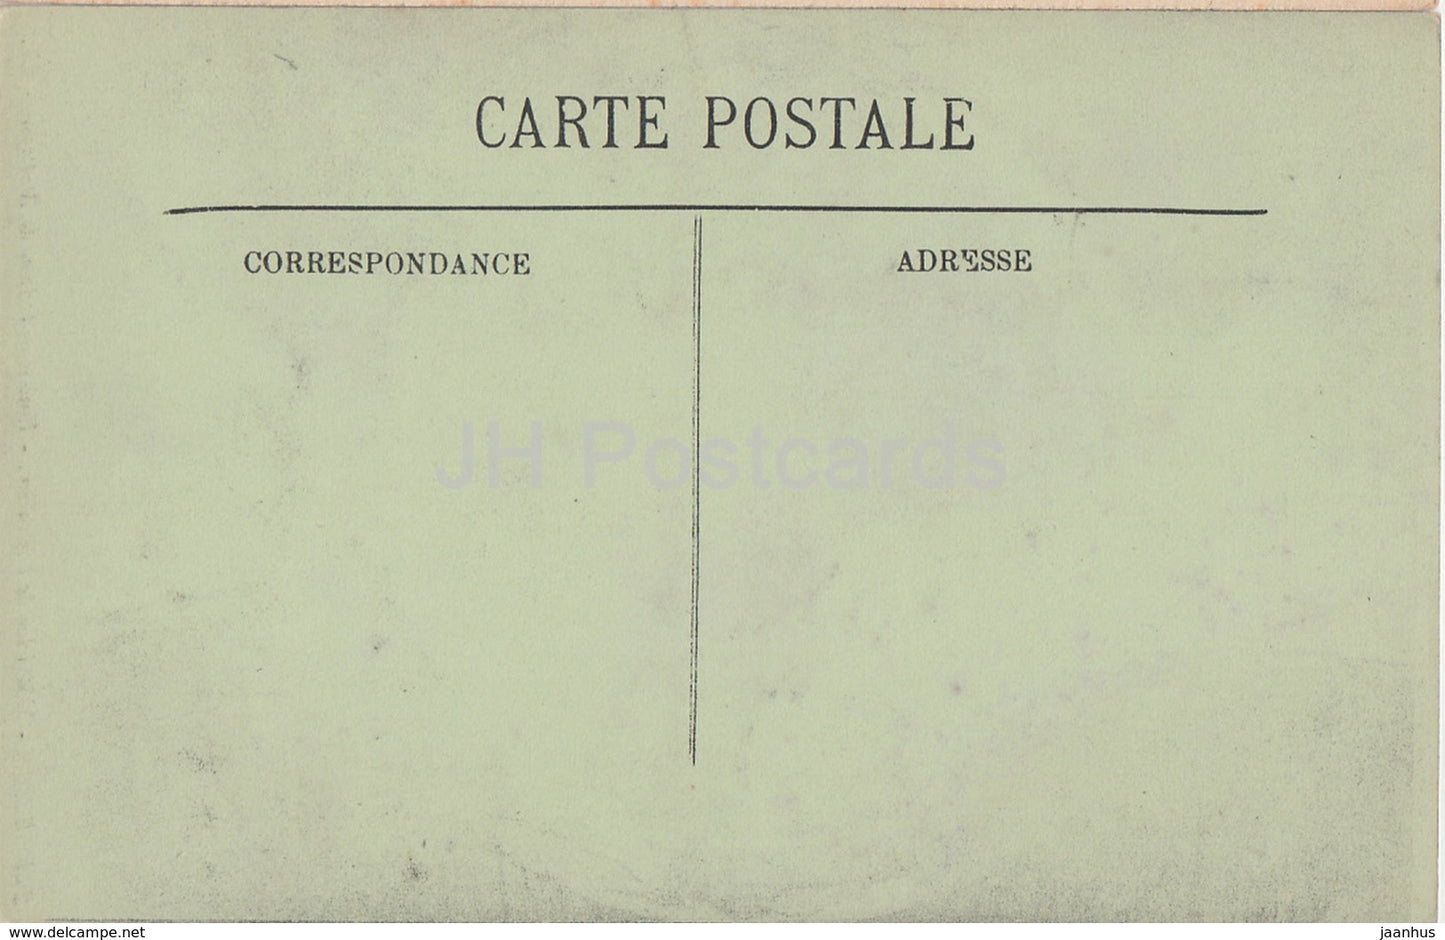 Blois - Medaillon de l'Escalier - Embleme d'Anne de Bretagne - 243 - alte Postkarte - Frankreich - unbenutzt